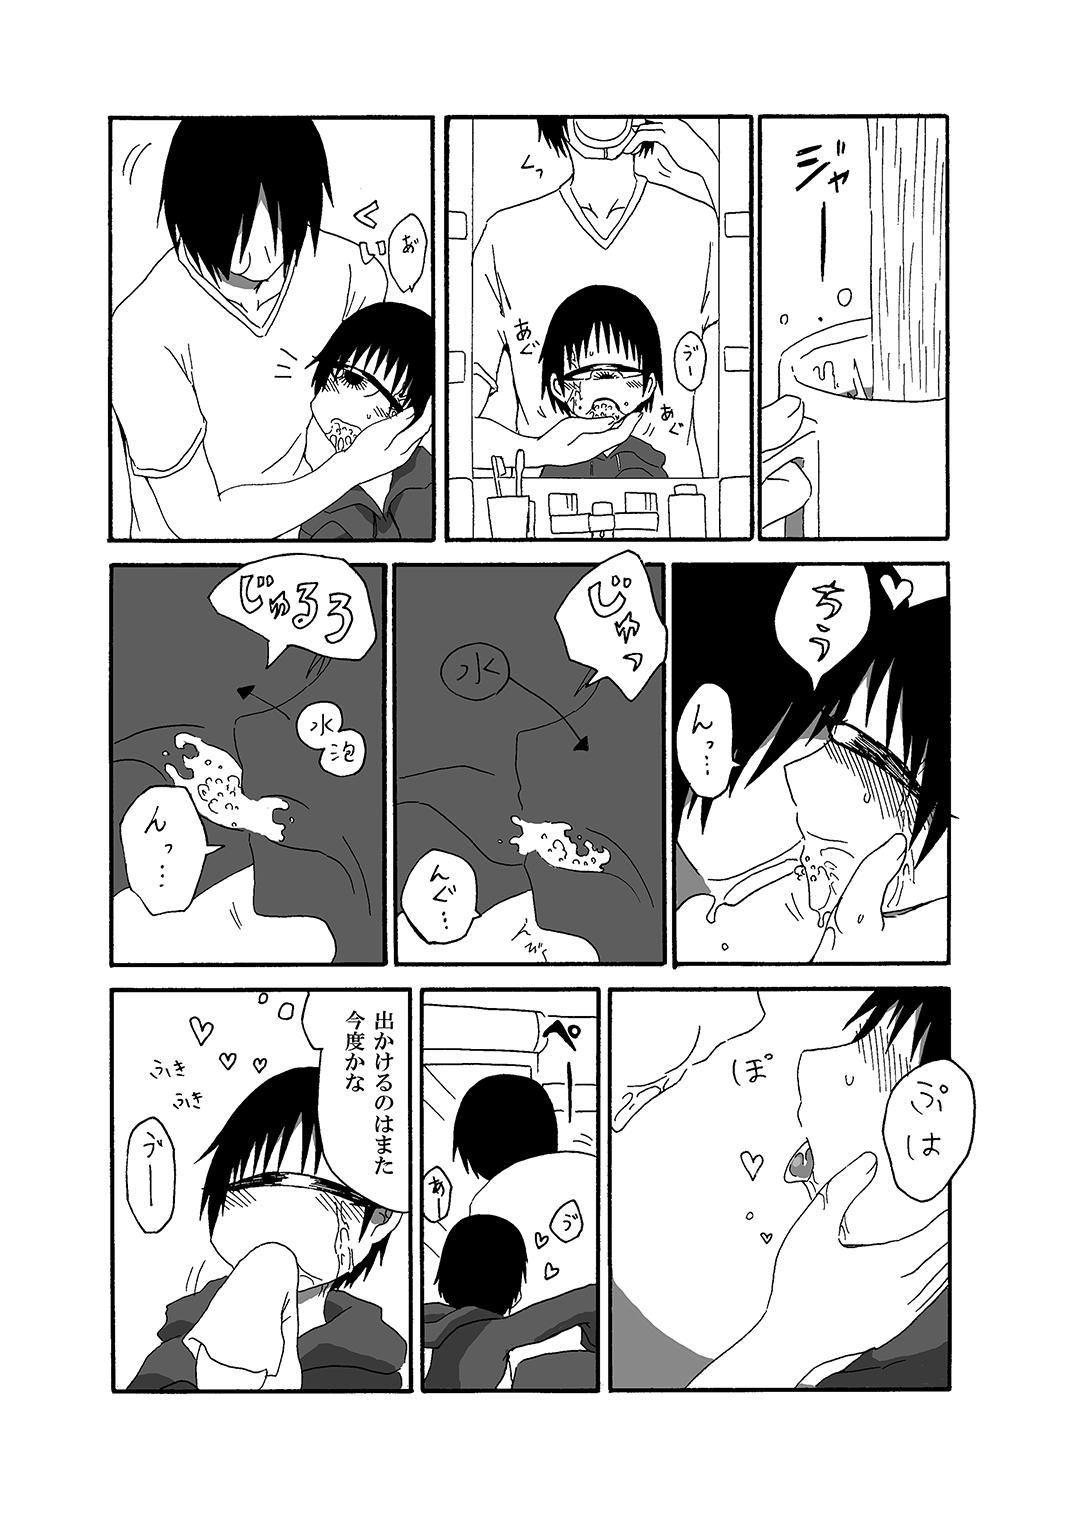 Tangan-chan Hirotte Kau Manga 2 8